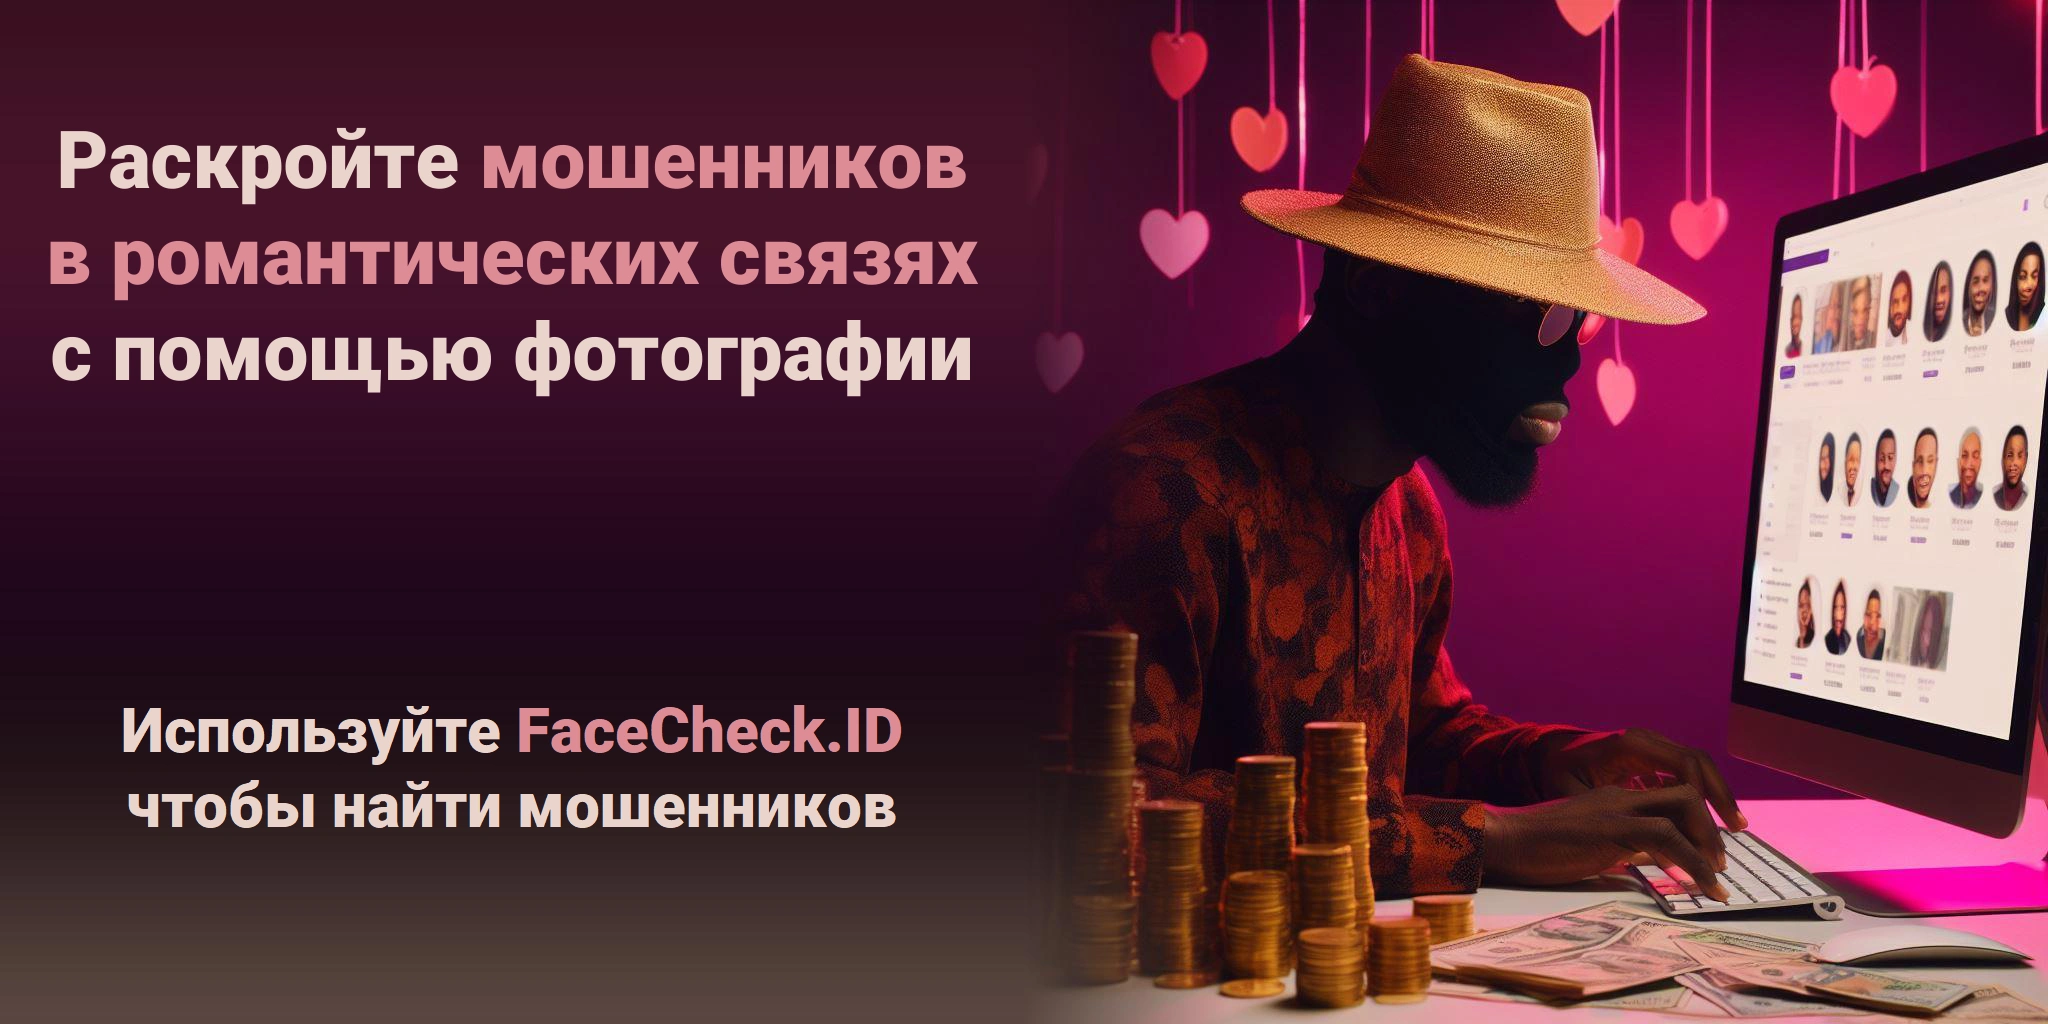 Раскройте мошенников в романтических связях с помощью фотографии Используйте FaceCheck.ID чтобы найти мошенников